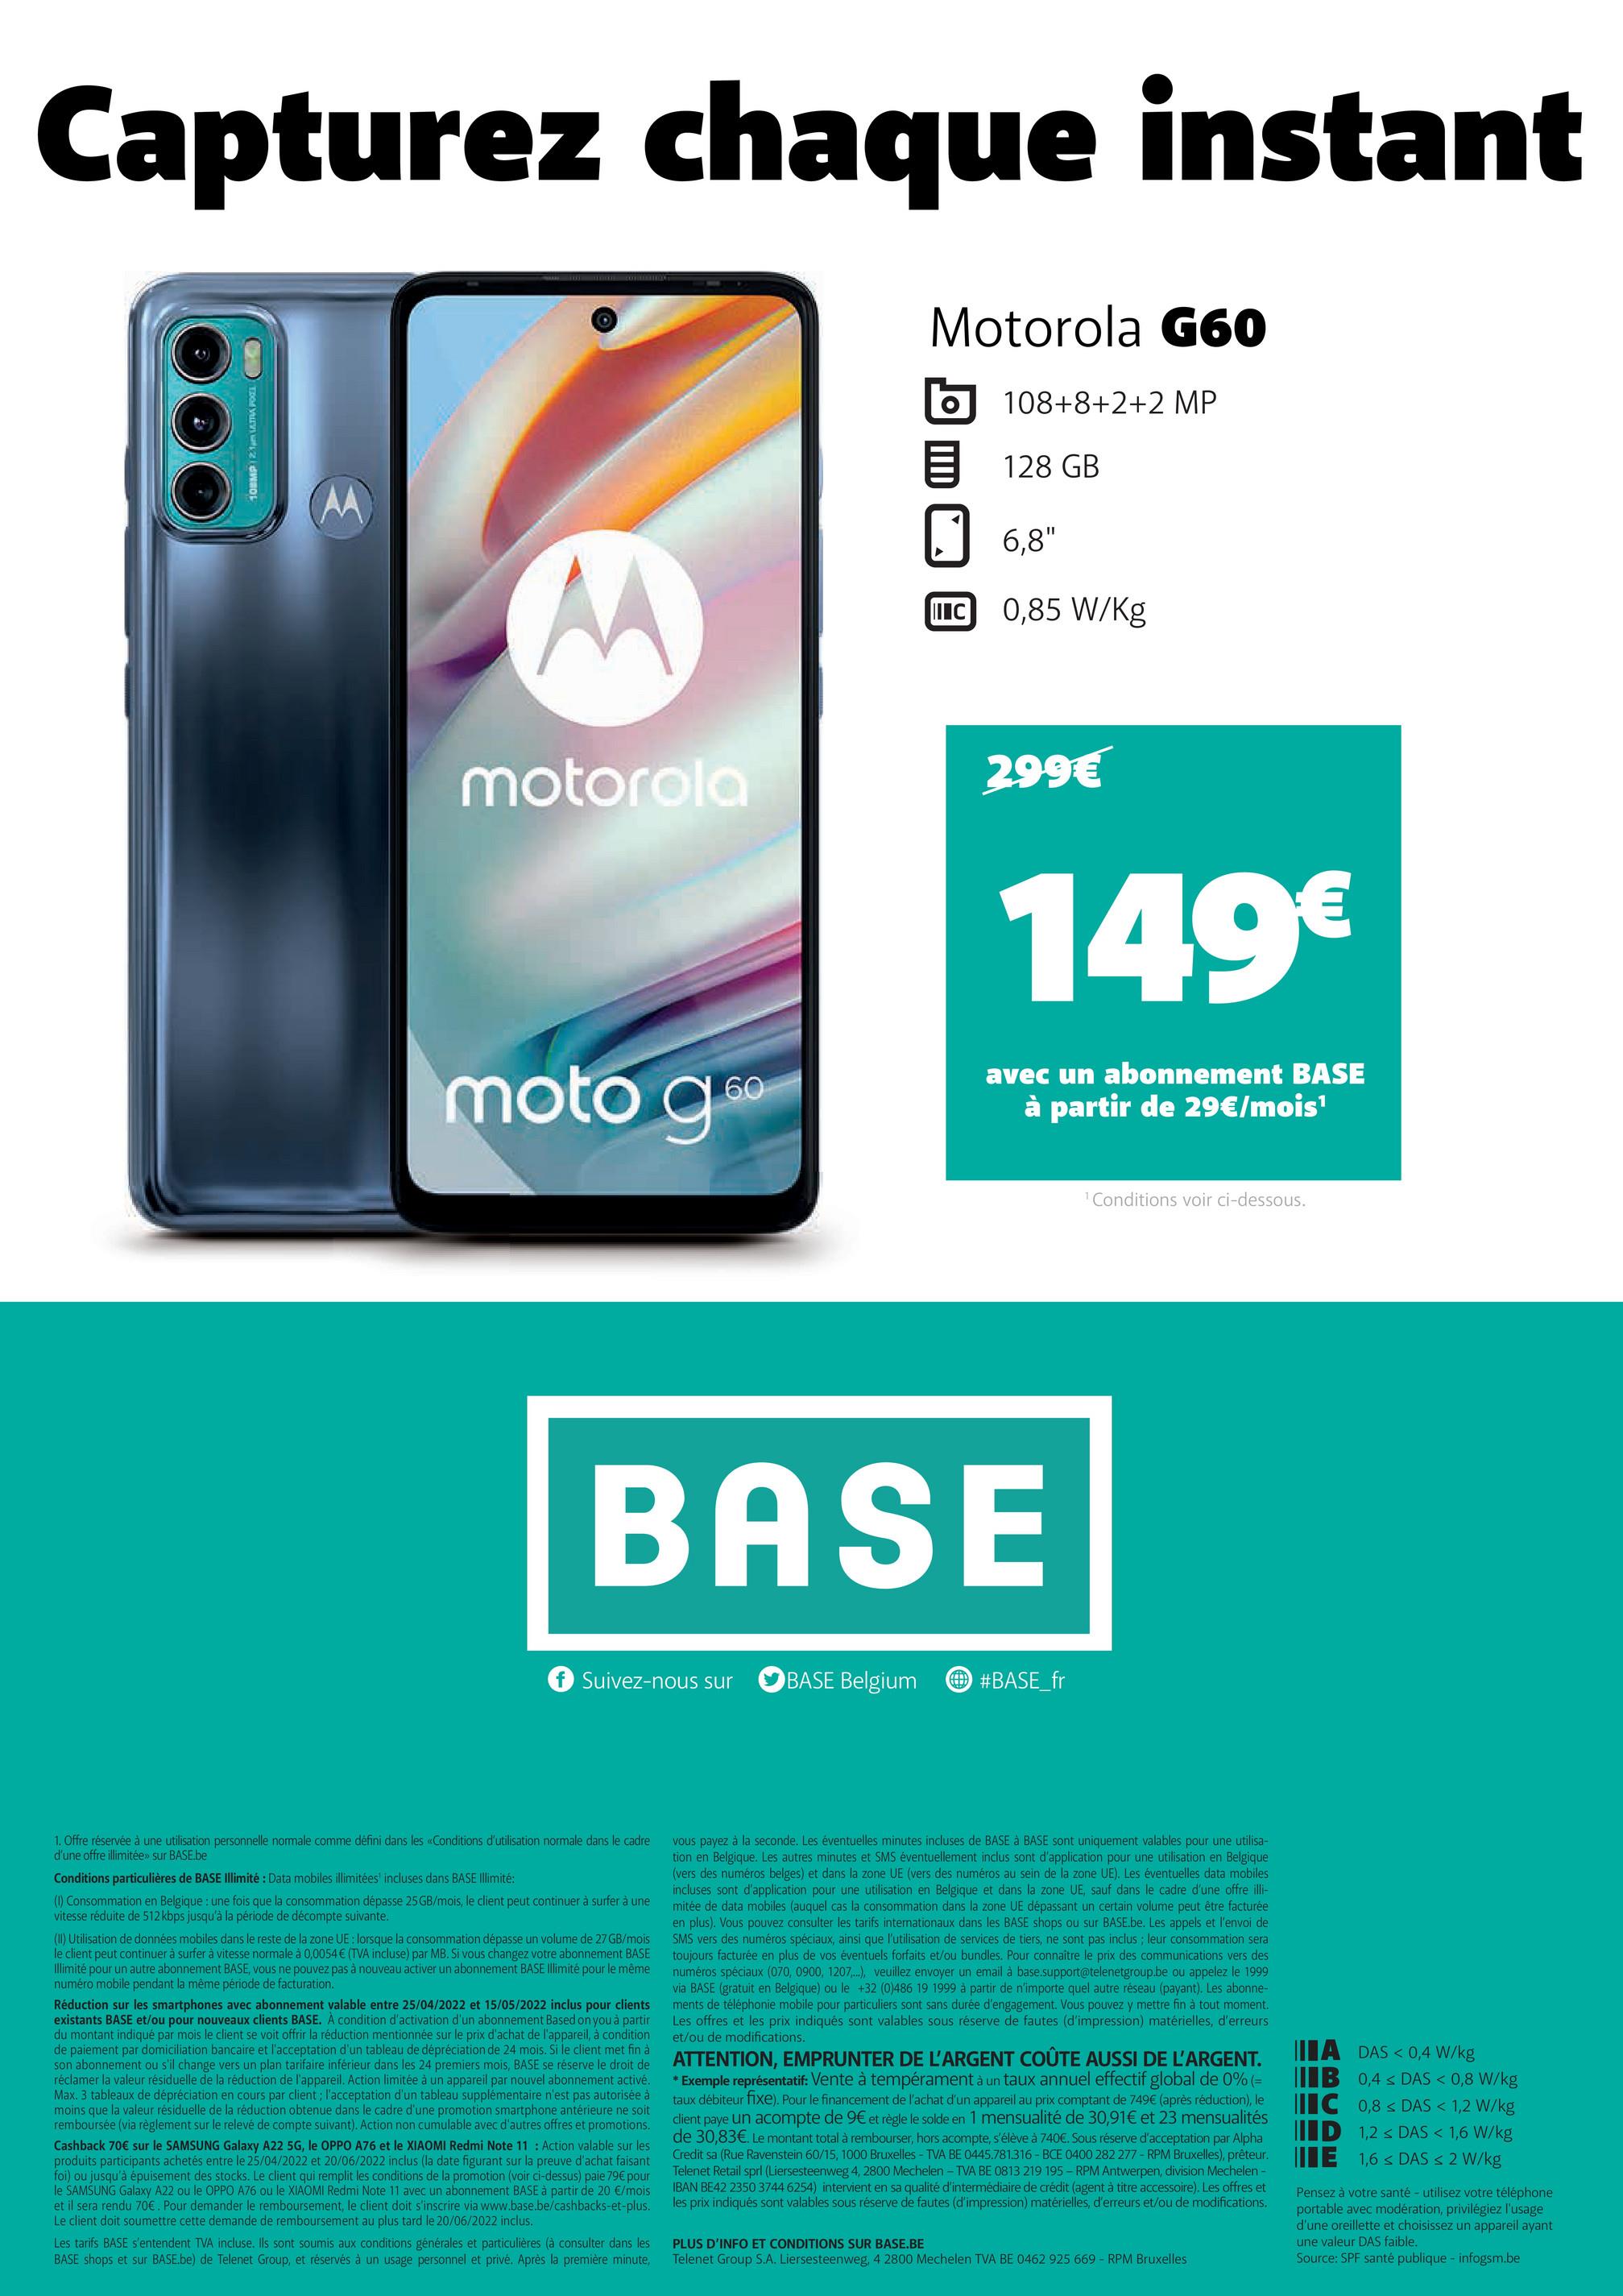 Capturez chaque instant
Motorola G60
108+8+2+2 MP
128 GB
6,8"
M
0,85 W/kg
motorola
moto g6⁰
60
TOOL
IIIC
1. Offre réservée à une utilisation personnelle normale comme défini dans les «Conditions d'utilisation normale dans le cadre
d'une offre illimitée»> sur BASE.be
Conditions particulières de BASE Illimité : Data mobiles illimitées incluses dans BASE Illimité:
(1) Consommation en Belgique : une fois que la consommation dépasse 25 GB/mois, le client peut continuer à surfer à une
vitesse réduite de 512 kbps jusqu'à la période de décompte suivante.
(II) Utilisation de données mobiles dans le reste de la zone UE: lorsque la consommation dépasse un volume de 27 GB/mois
le client peut continuer à surfer à vitesse normale à 0,0054 € (TVA incluse) par MB. Si vous changez votre abonnement BASE
Illimité pour un autre abonnement BASE, vous ne pouvez pas à nouveau activer un abonnement BASE Illimité pour le même
numéro mobile pendant la même période de facturation.
Réduction sur les smartphones avec abonnement valable entre 25/04/2022 et 15/05/2022 inclus pour clients
existants BASE et/ou pour nouveaux clients BASE. À condition d'activation d'un abonnement Based on you à partir
du montant indiqué par mois le client se voit offrir la réduction mentionnée sur le prix d'achat de l'appareil, à condition
de paiement par domiciliation bancaire et l'acceptation d'un tableau de dépréciation de 24 mois. Si le client met fin à
son abonnement ou s'il change vers un plan tarifaire inférieur dans les 24 premiers mois, BASE se réserve le droit de
réclamer la valeur résiduelle de la réduction de l'appareil. Action limitée à un appareil par nouvel abonnement activé.
Max. 3 tableaux de dépréciation en cours par client; l'acceptation d'un tableau supplémentaire n'est pas autorisée à
moins que la valeur résiduelle de la réduction obtenue dans le cadre d'une promotion smartphone antérieure ne soit
remboursée (via règlement sur le relevé de compte suivant). Action non cumulable avec d'autres offres et promotions.
Cashback 70€ sur le SAMSUNG Galaxy A22 5G, le OPPO A76 et le XIAOMI Redmi Note 11: Action valable sur les
produits participants achetés entre le 25/04/2022 et 20/06/2022 inclus (la date figurant sur la preuve d'achat faisant
foi) ou jusqu'à épuisement des stocks. Le client qui remplit les conditions de la promotion (voir ci-dessus) paie 79€ pour
le SAMSUNG Galaxy A22 ou le OPPO A76 ou le XIAOMI Redmi Note 11 avec un abonnement BASE à partir de 20 €/mois
et il sera rendu 70€. Pour demander le remboursement, le client doit s'inscrire via www.base.be/cashbacks-et-plus.
Le client doit soumettre cette demande de remboursement au plus tard le 20/06/2022 inclus.
Les tarifs BASE s'entendent TVA incluse. Ils sont soumis aux conditions générales et particulières (à consulter dans les
BASE shops et sur BASE.be) de Telenet Group, et réservés à usage personnel et privé. Après la première minute,
299€
149€
avec un abonnement BASE
à partir de 29€/mois¹
¹ Conditions voir ci-dessous.
BASE
f Suivez-nous sur
BASE Belgium
#BASE_fr
vous payez à la seconde. Les éventuelles minutes incluses de BASE à BASE sont uniquement valables pour une utilisa-
tion en Belgique. Les autres minutes et SMS éventuellement inclus sont d'application pour une utilisation en Belgique
(vers des numéros belges) et dans la zone UE (vers des numéros au sein de la zone UE). Les éventuelles data mobiles
incluses sont d'application pour une utilisation en Belgique et dans la zone UE, sauf dans le cadre d'une offre illi-
mitée de data mobiles (auquel cas la consommation dans la zone UE dépassant un certain volume peut être facturée
en plus). Vous pouvez consulter les tarifs internationaux dans les BASE shops ou sur BASE.be. Les appels et l'envoi de
SMS vers des numéros spéciaux, ainsi que l'utilisation de services de tiers, ne sont pas inclus; leur consommation sera
toujours facturée en plus de vos éventuels forfaits et/ou bundles. Pour connaître le prix des communications vers des
numéros spéciaux (070, 0900, 1207...), veuillez envoyer un email à base.support@telenetgroup.be ou appelez le 1999
via BASE (gratuit en Belgique) ou le +32 (0)486 19 1999 à partir de n'importe quel autre réseau (payant). Les abonne-
ments de téléphonie mobile pour particuliers sont sans durée d'engagement. Vous pouvez y mettre fin à tout moment.
Les offres et les prix indiqués sont valables sous réserve de fautes (d'impression) matérielles, d'erreurs
et/ou de modifications.
ATTENTION, EMPRUNTER DE L'ARGENT COÛTE AUSSI DE L'ARGENT.
* Exemple représentatif: Vente à tempérament à un taux annuel effectif global de 0% (=
taux débiteur fixe). Pour le financement de l'achat d'un appareil au prix comptant de 749€ (après réduction), le
client paye un acompte de 9€ et règle le solde en 1 mensualité de 30,91€ et 23 mensualités
de 30,83€. Le montant total à rembourser, hors acompte, s'élève à 740€. Sous réserve d'acceptation par Alpha
Credit sa (Rue Ravenstein 60/15, 1000 Bruxelles - TVA BE 0445.781.316-BCE 0400 282 277- RPM Bruxelles), prêteur.
Telenet Retail sprl (Liersesteenweg 4, 2800 Mechelen - TVA BE 0813 219 195- RPM Antwerpen, division Mechelen -
IBAN BE42 2350 3744 6254) intervient en sa qualité d'intermédiaire de crédit (agent à titre accessoire). Les offres et
les prix indiqués sont valables sous réserve de fautes (d'impression) matérielles, d'erreurs et/ou de modifications.
PLUS D'INFO ET CONDITIONS SUR BASE.BE
Telenet Group S.A. Liersesteenweg, 4 2800 Mechelen TVA BE 0462 925 669 - RPM Bruxelles
A DAS < 0,4 W/kg
IB 0,4 ≤ DAS < 0,8 W/kg
C 0,8 < DAS < 1,2 W/kg
ID
1,2 ≤ DAS < 1,6 W/kg
E 1,6 ≤ DAS < 2 W/kg
Pensez à votre santé - utilisez votre téléphone
portable avec modération, privilégiez l'usage
d'une oreillette et choisissez un appareil ayant
une valeur DAS faible.
Source: SPF santé publique - infogsm.be